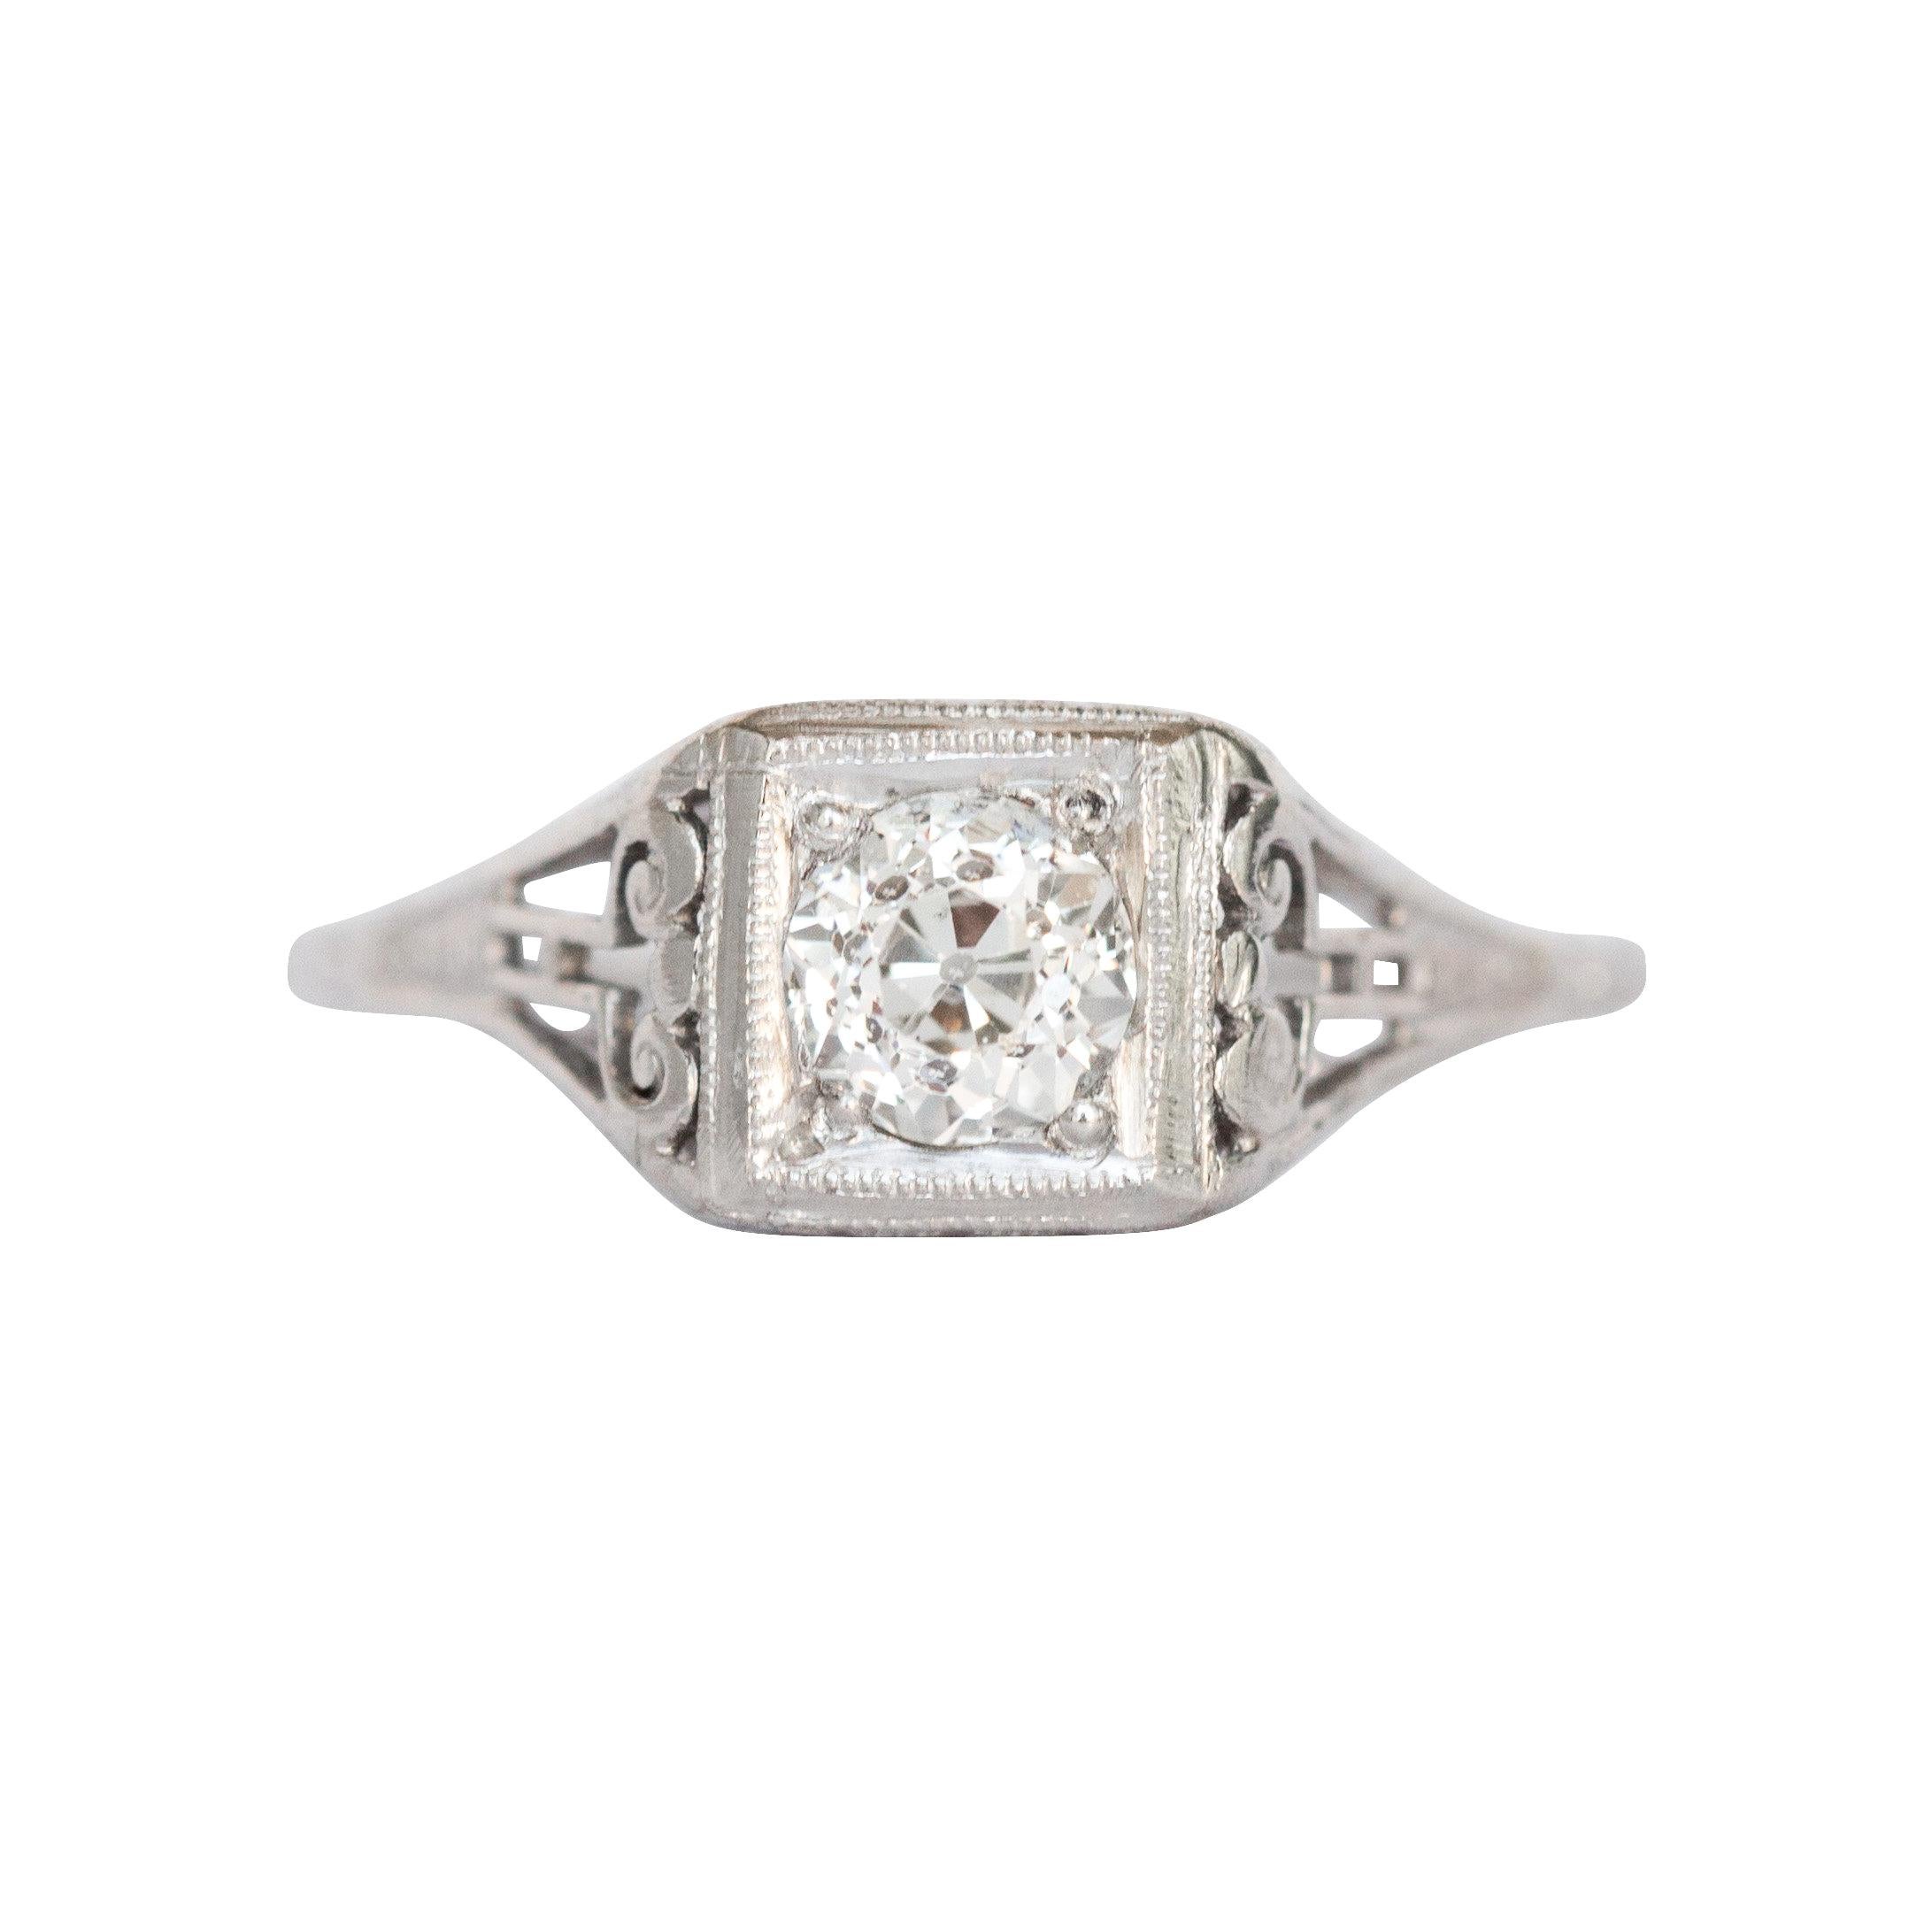 .44 Carat Diamond Platinum Engagement Ring